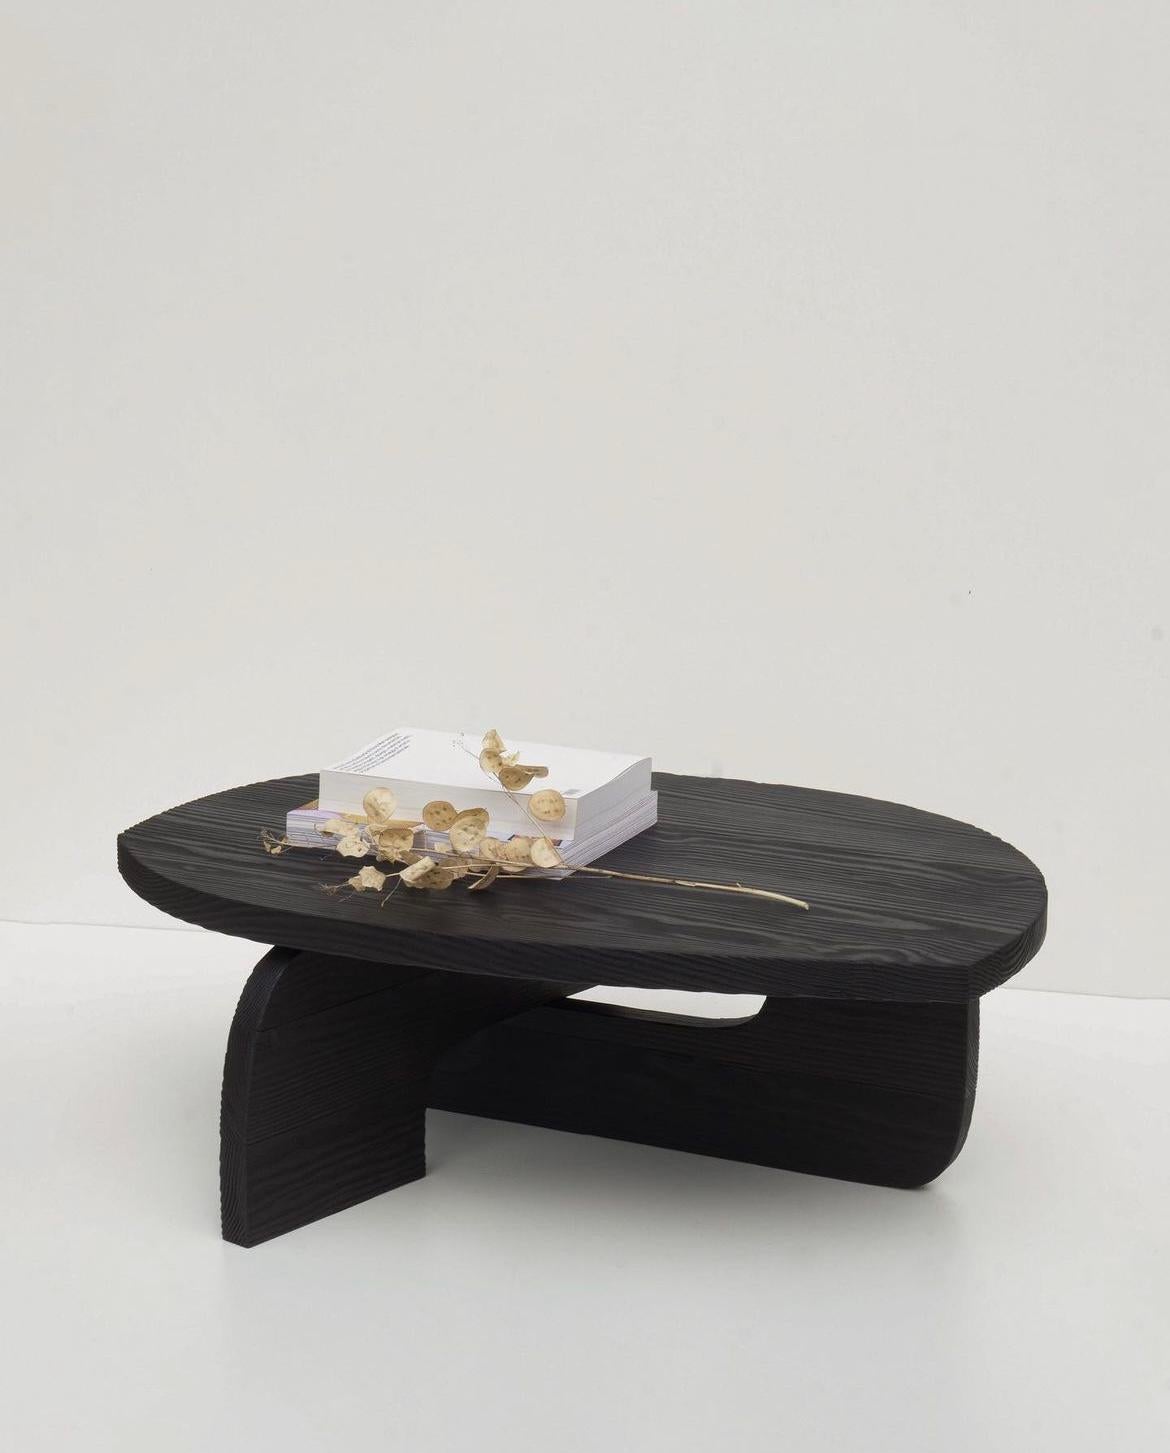 Cette table basse noire du 21ème siècle est un produit de l'artisanat italien. A partir de planches de cèdre, les artisans chargent le bois en utilisant la technique Shou Sugi Ban et assemblent ensuite Reef V3. Elle est fabriquée en édition limitée